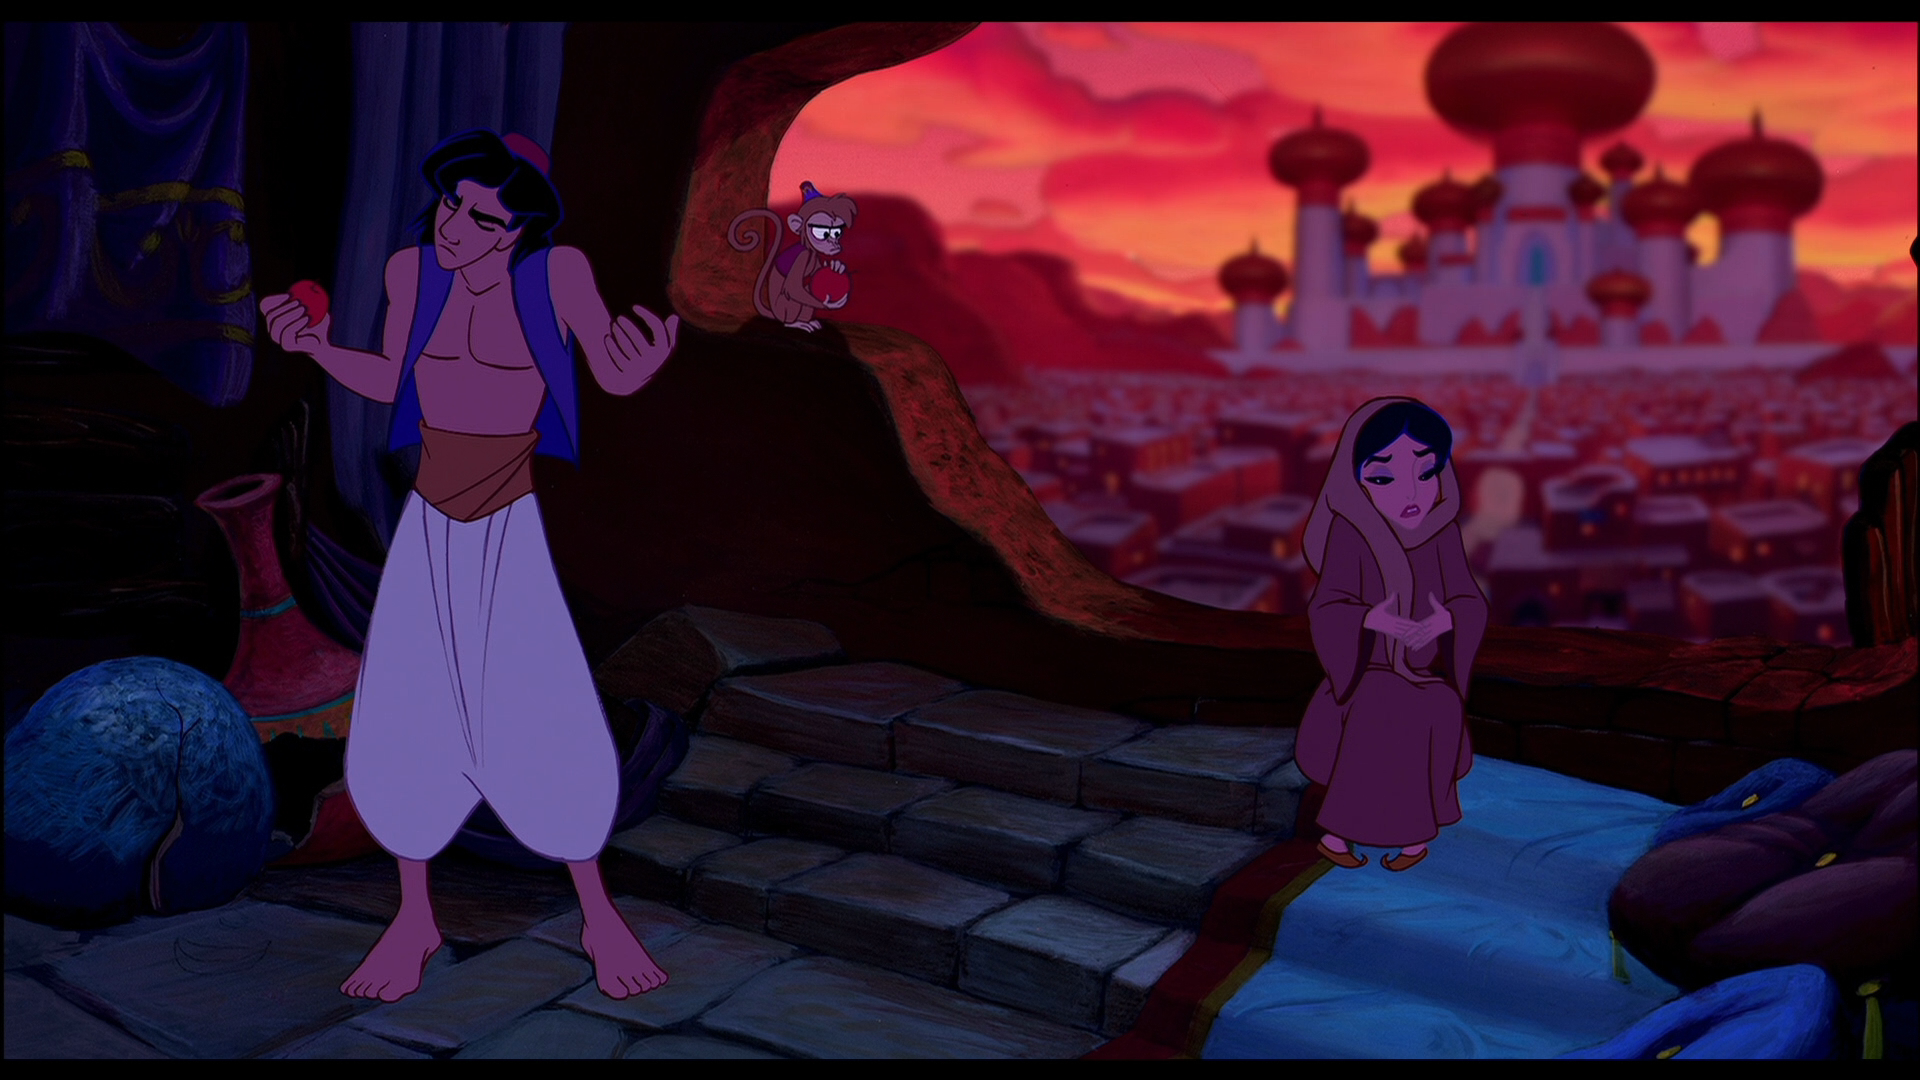 [阿拉丁].Aladdin.1992.CHN.BluRay.1080p.AVC.DTS-HD.MA.7.1-CrsS   39.65G  C8 l, q5 [% C-4.png